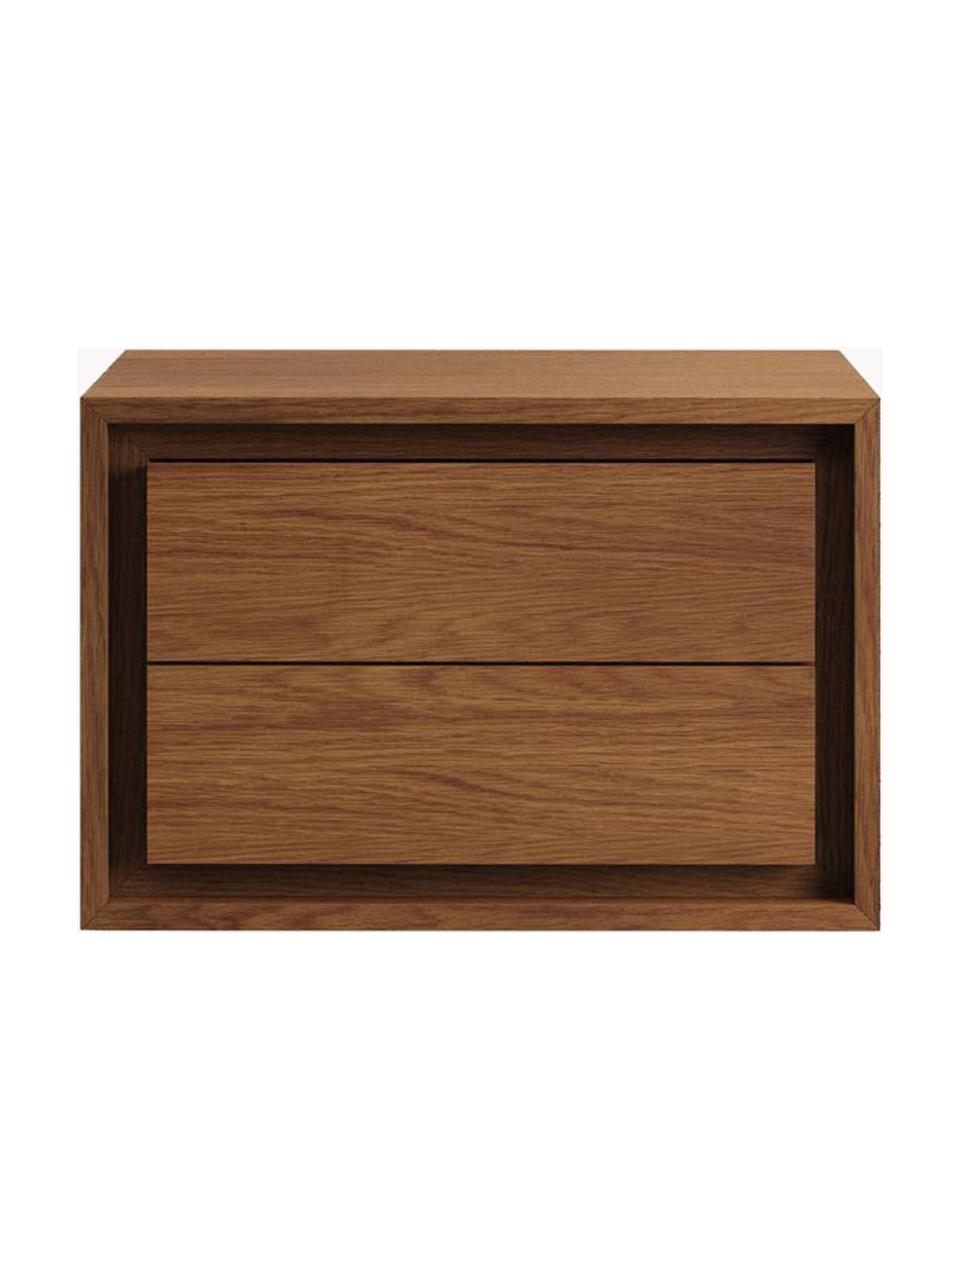 Umyvadlová skříňka z teakového dřeva Kenta, Teakové dřevo, Teakové dřevo, tmavé, Š 60 cm, V 40 cm